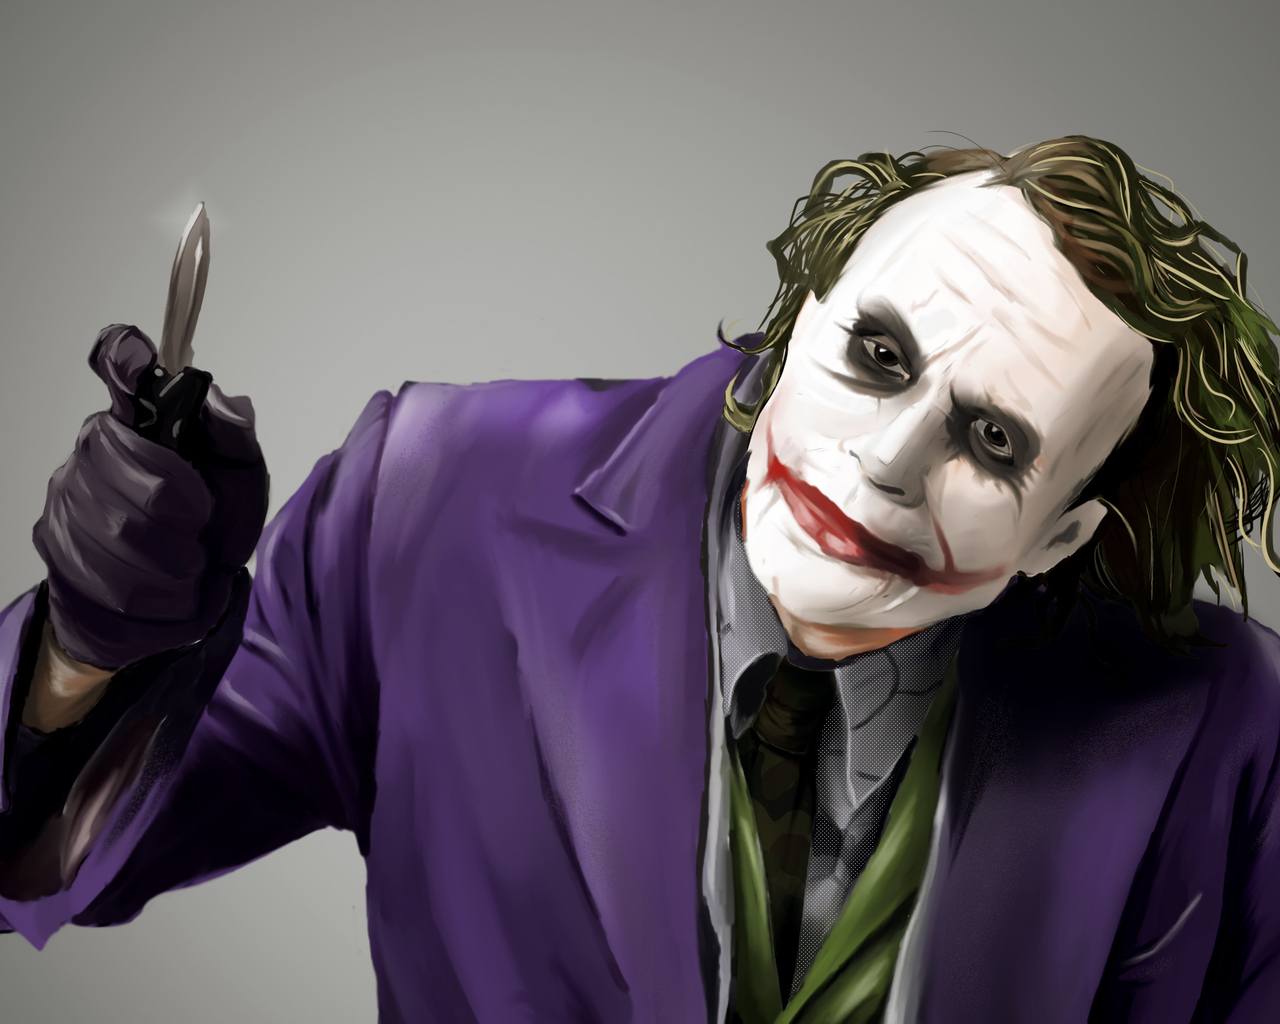 1280x1024 Joker Paint Art 1280x1024 Resolution HD 4k Wallpapers, Images ...